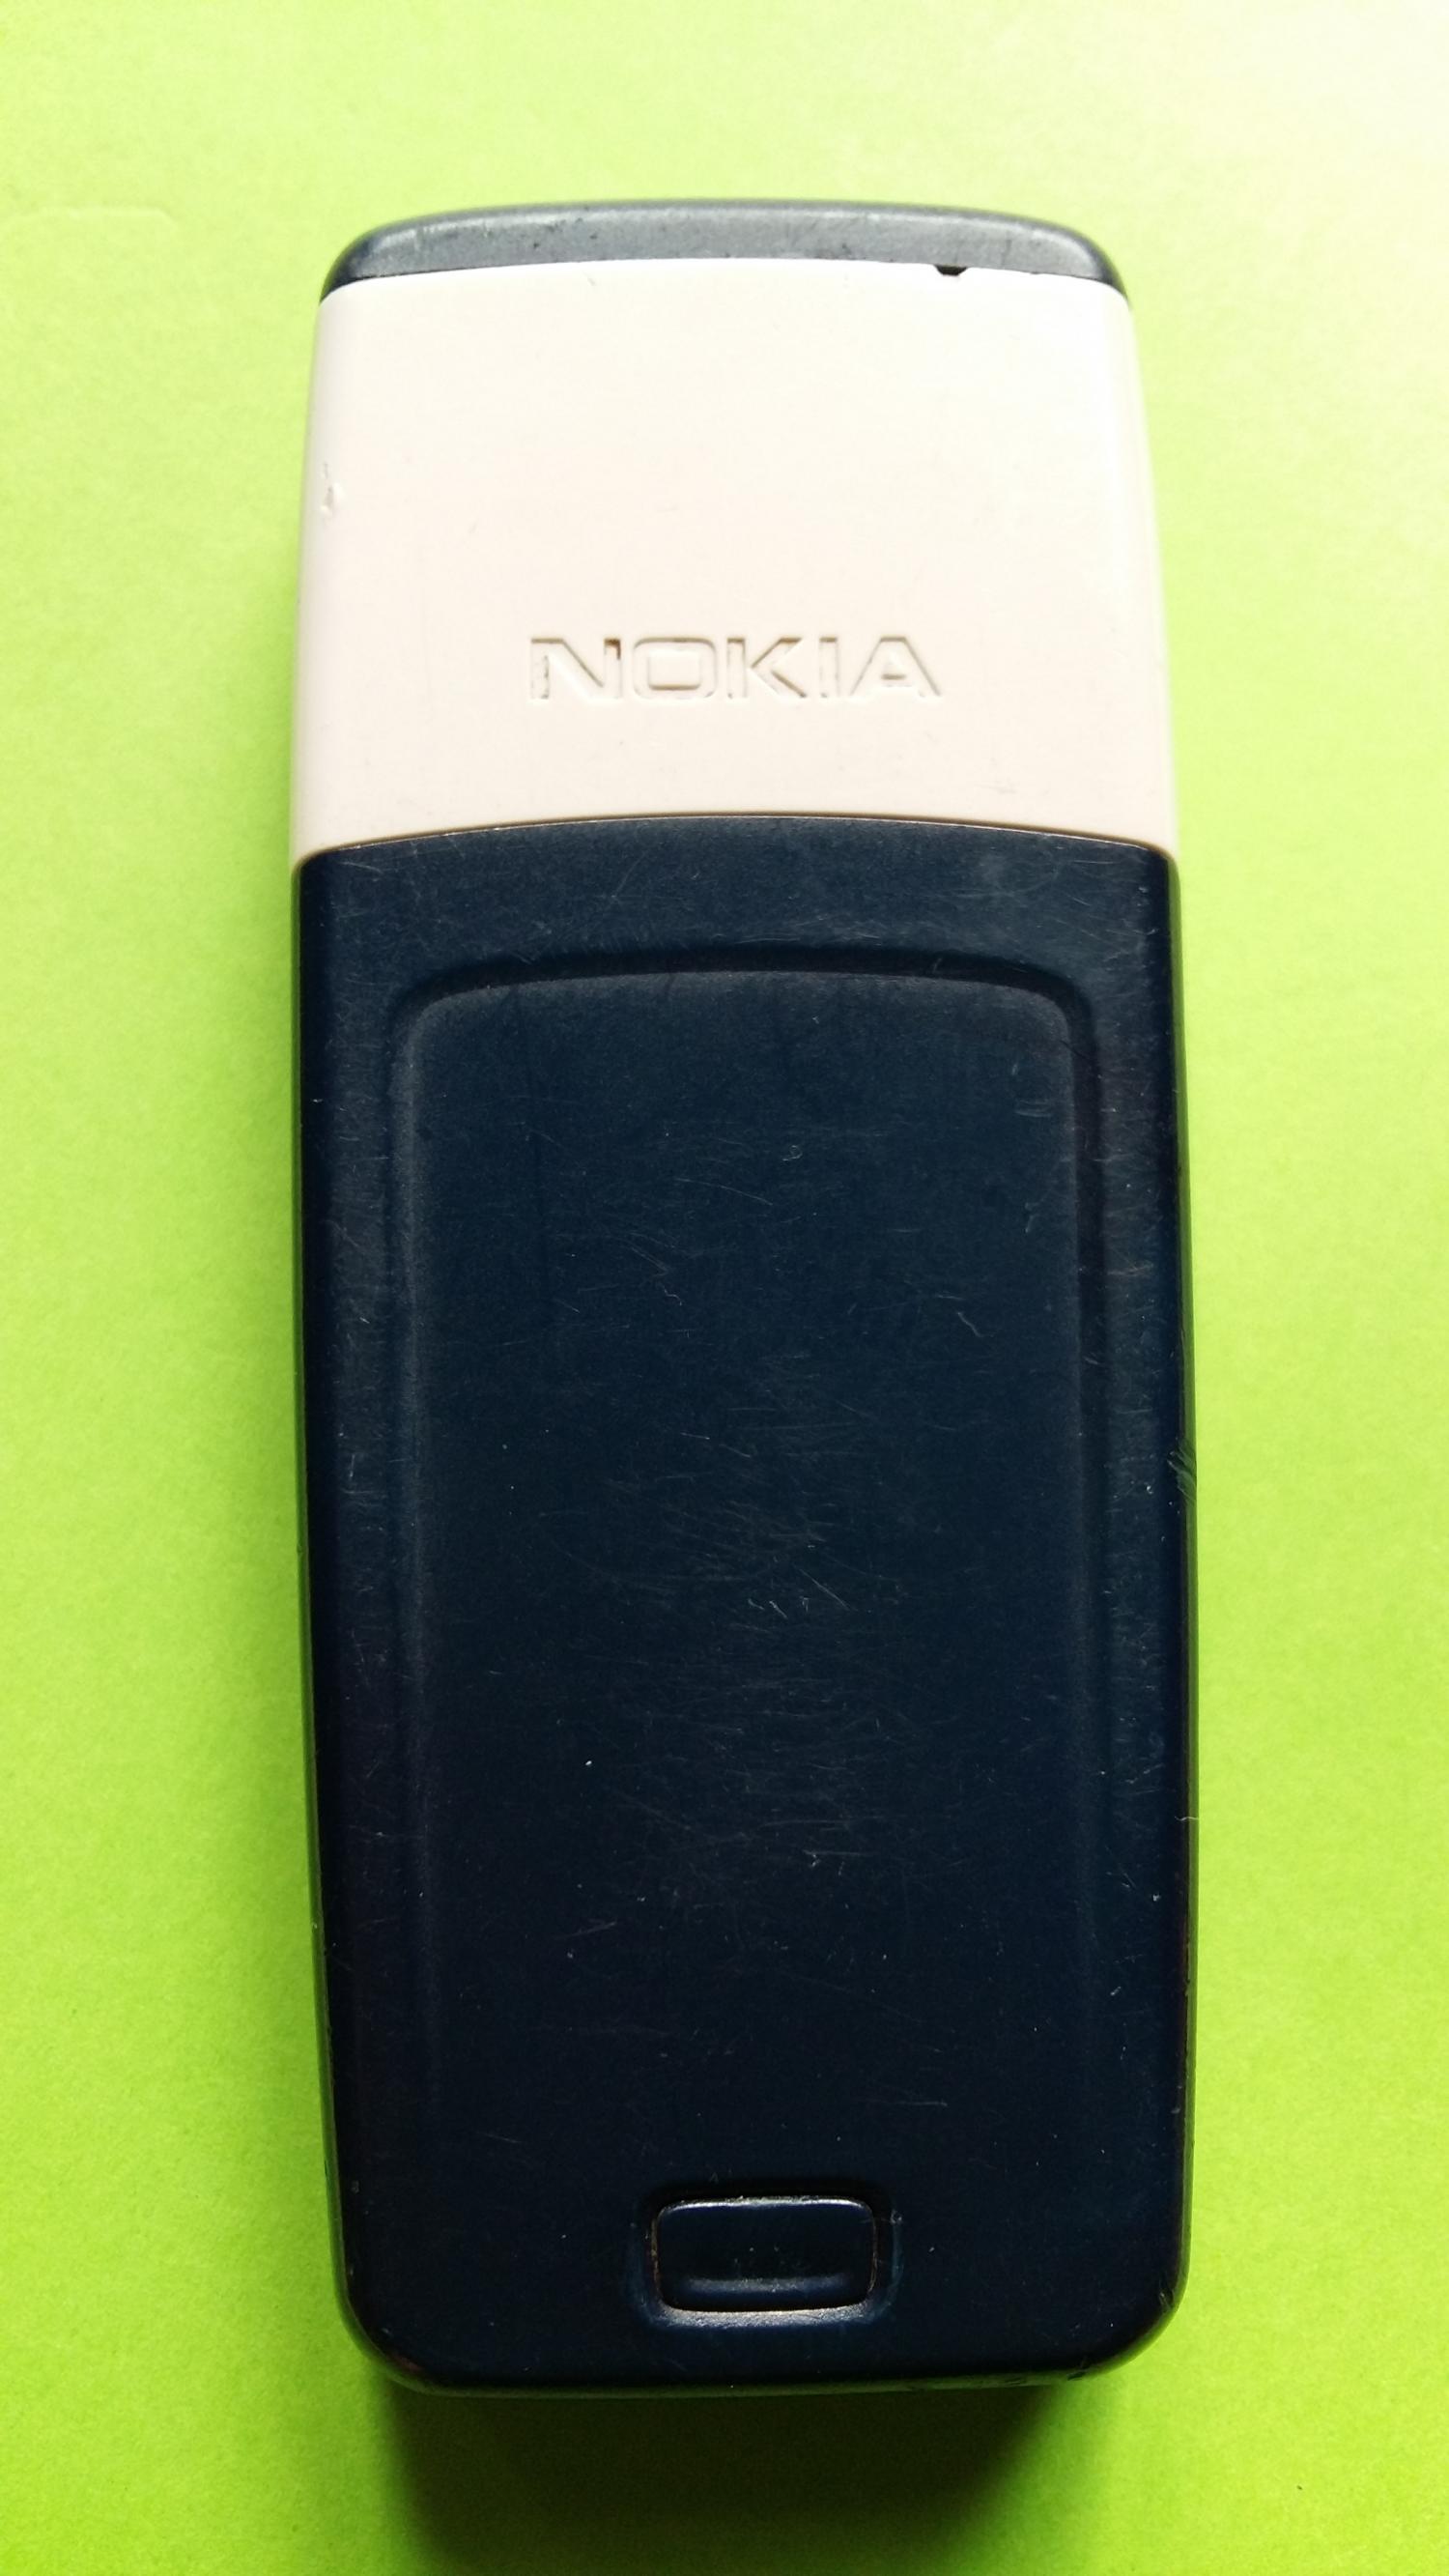 image-7300328-Nokia 1110 (1)2.jpg